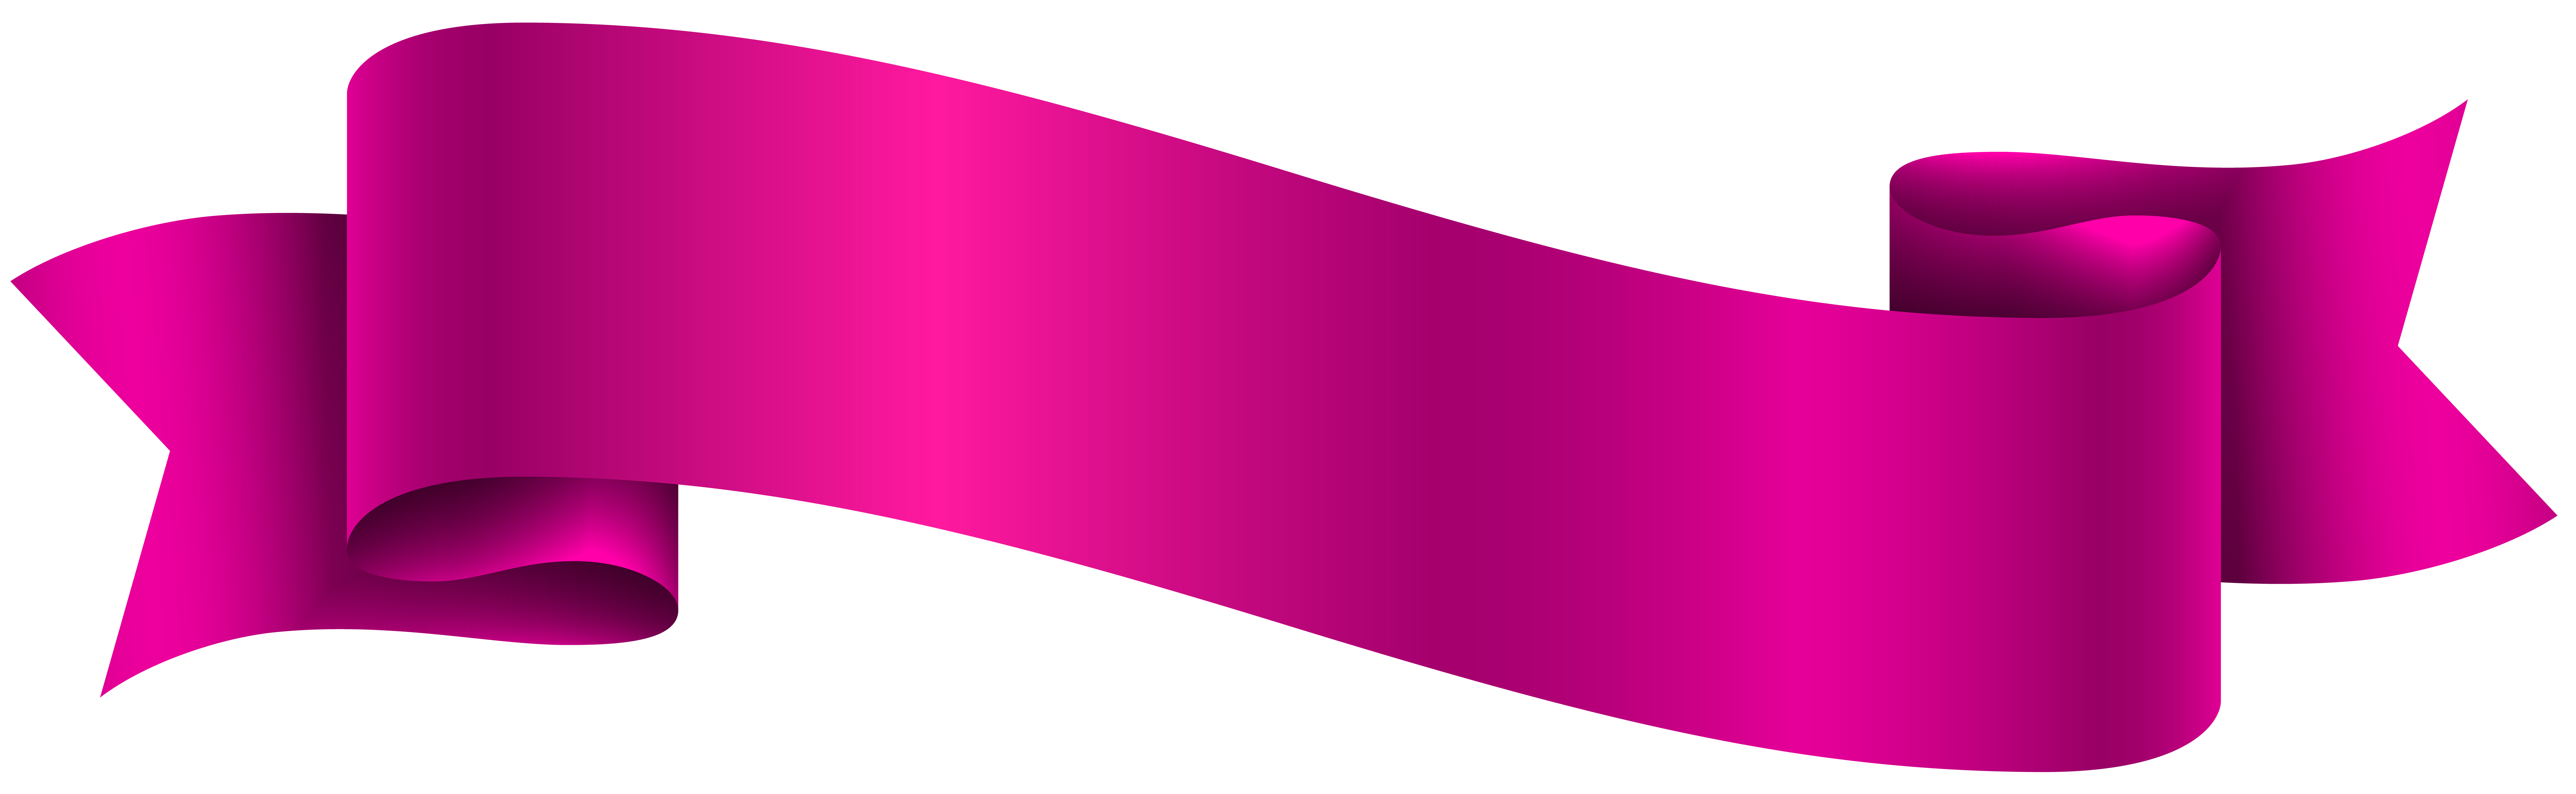 Pink Banner Transparent PNG Clip Art Image